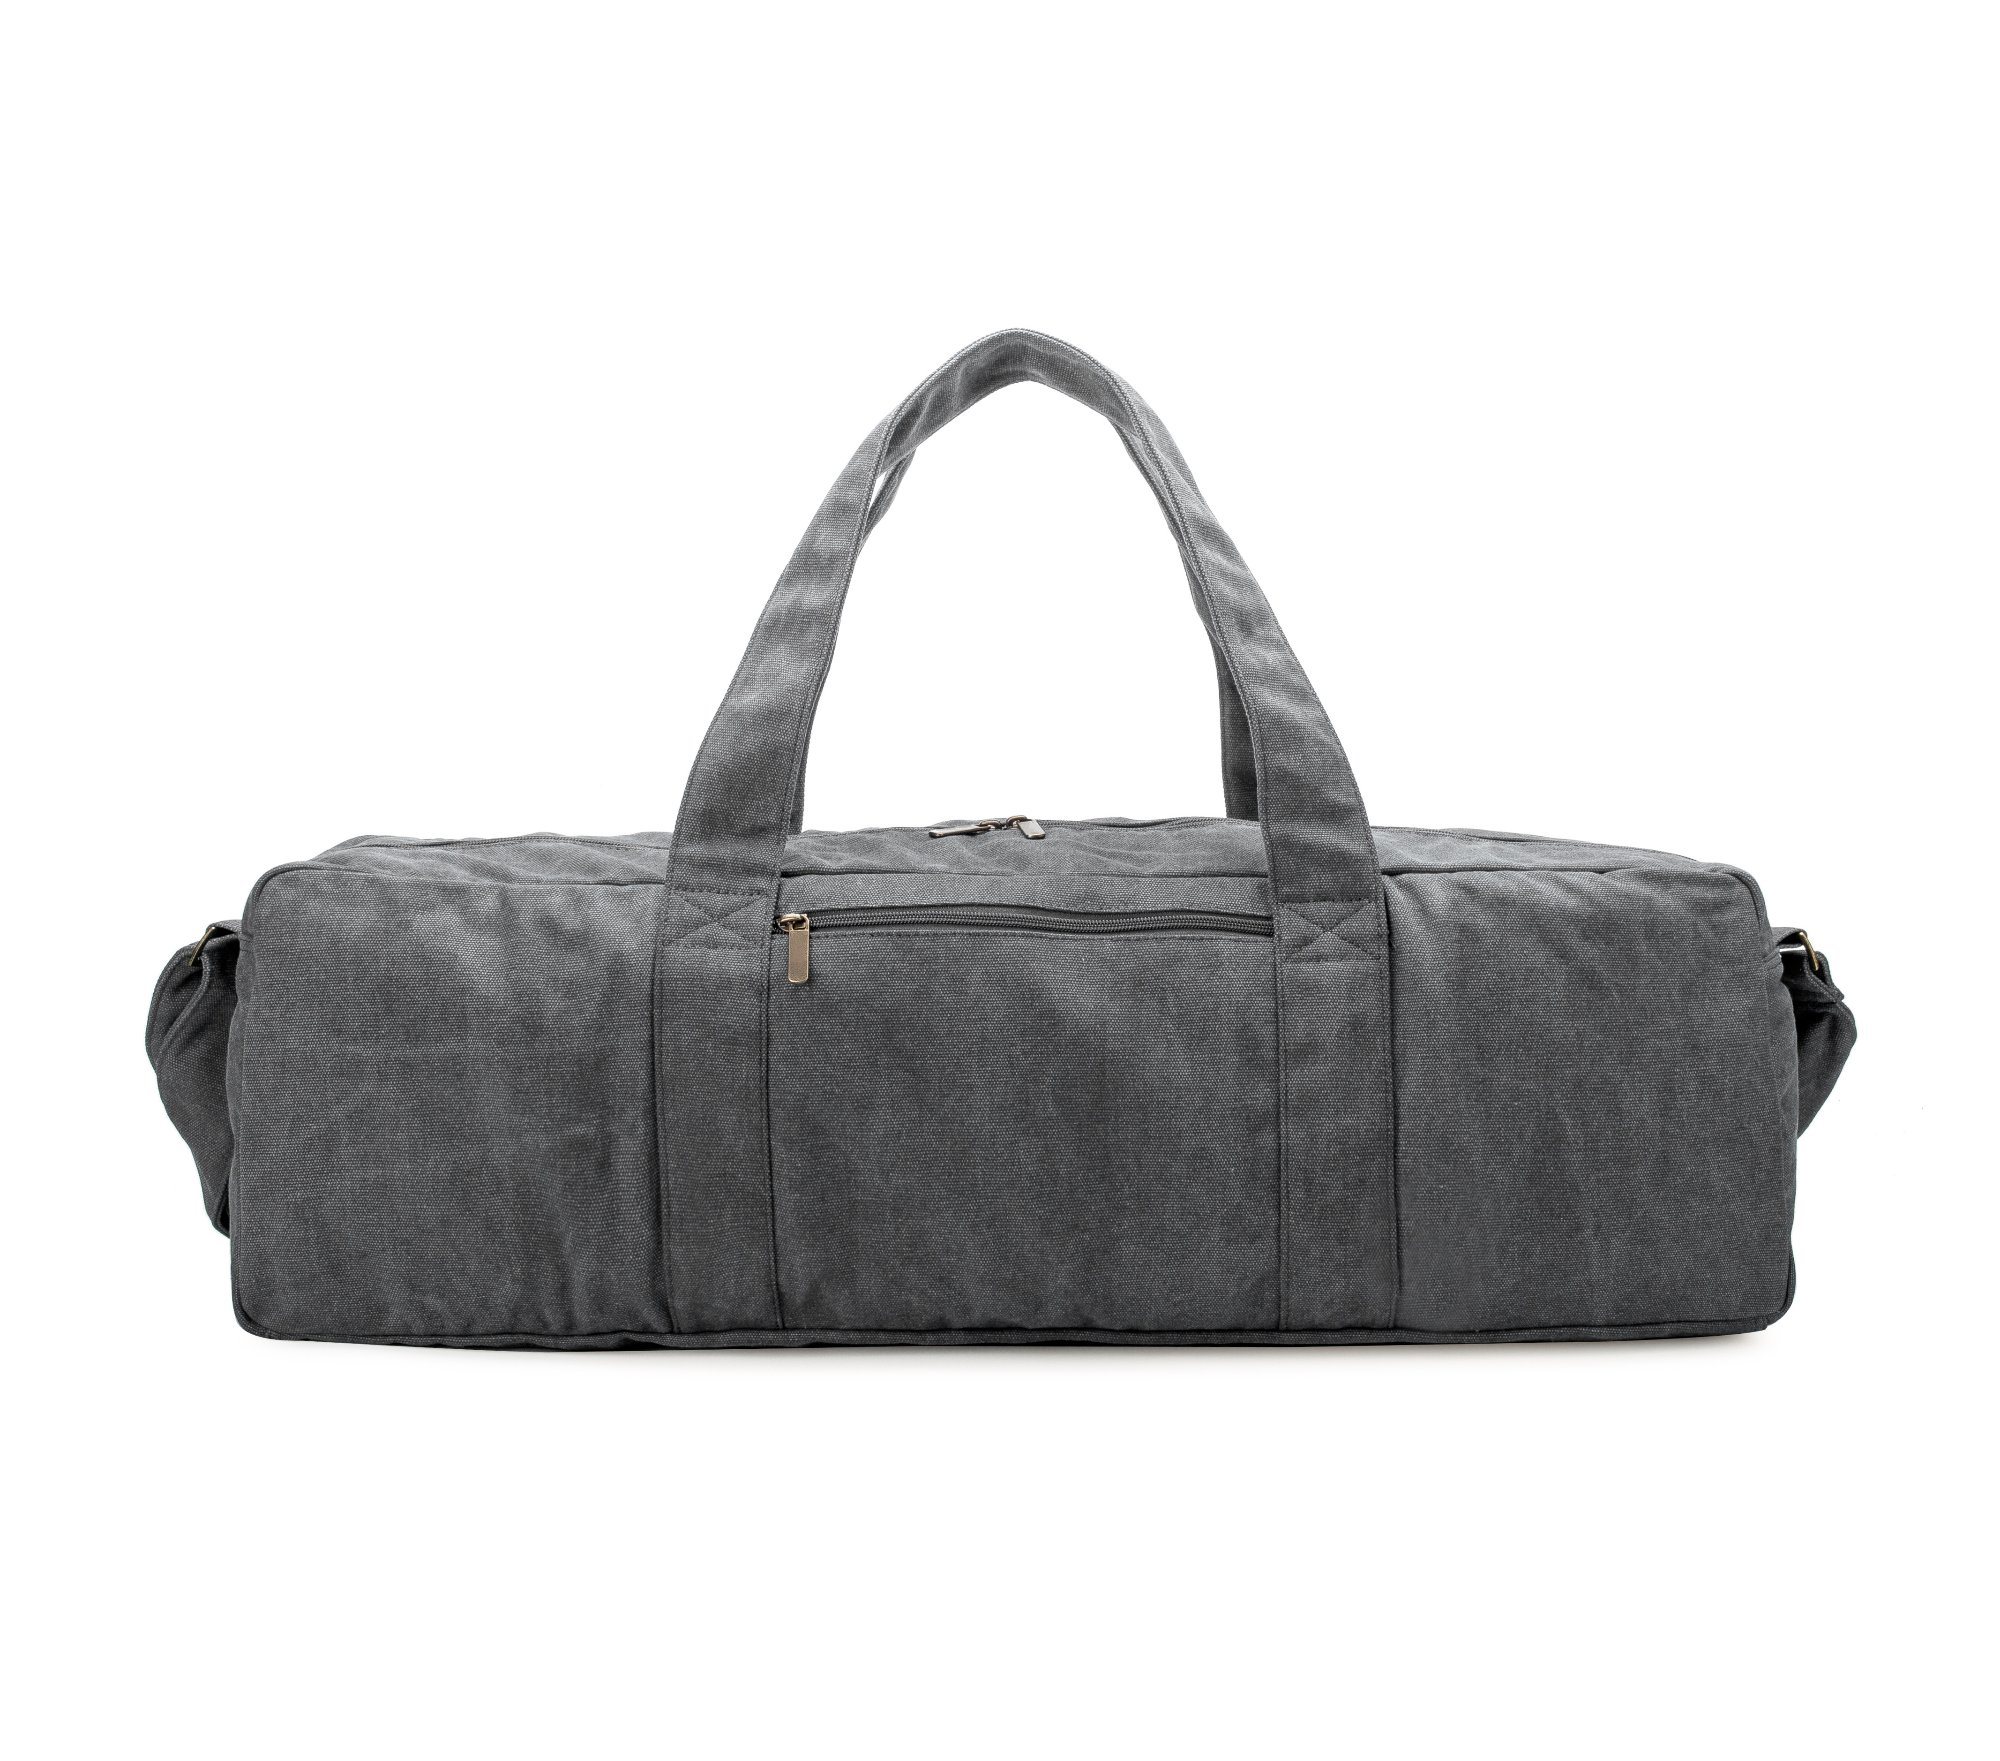 2018 New Design Sports Travel Bag Canvas Yoga Bag Outdoor Duffel Bag